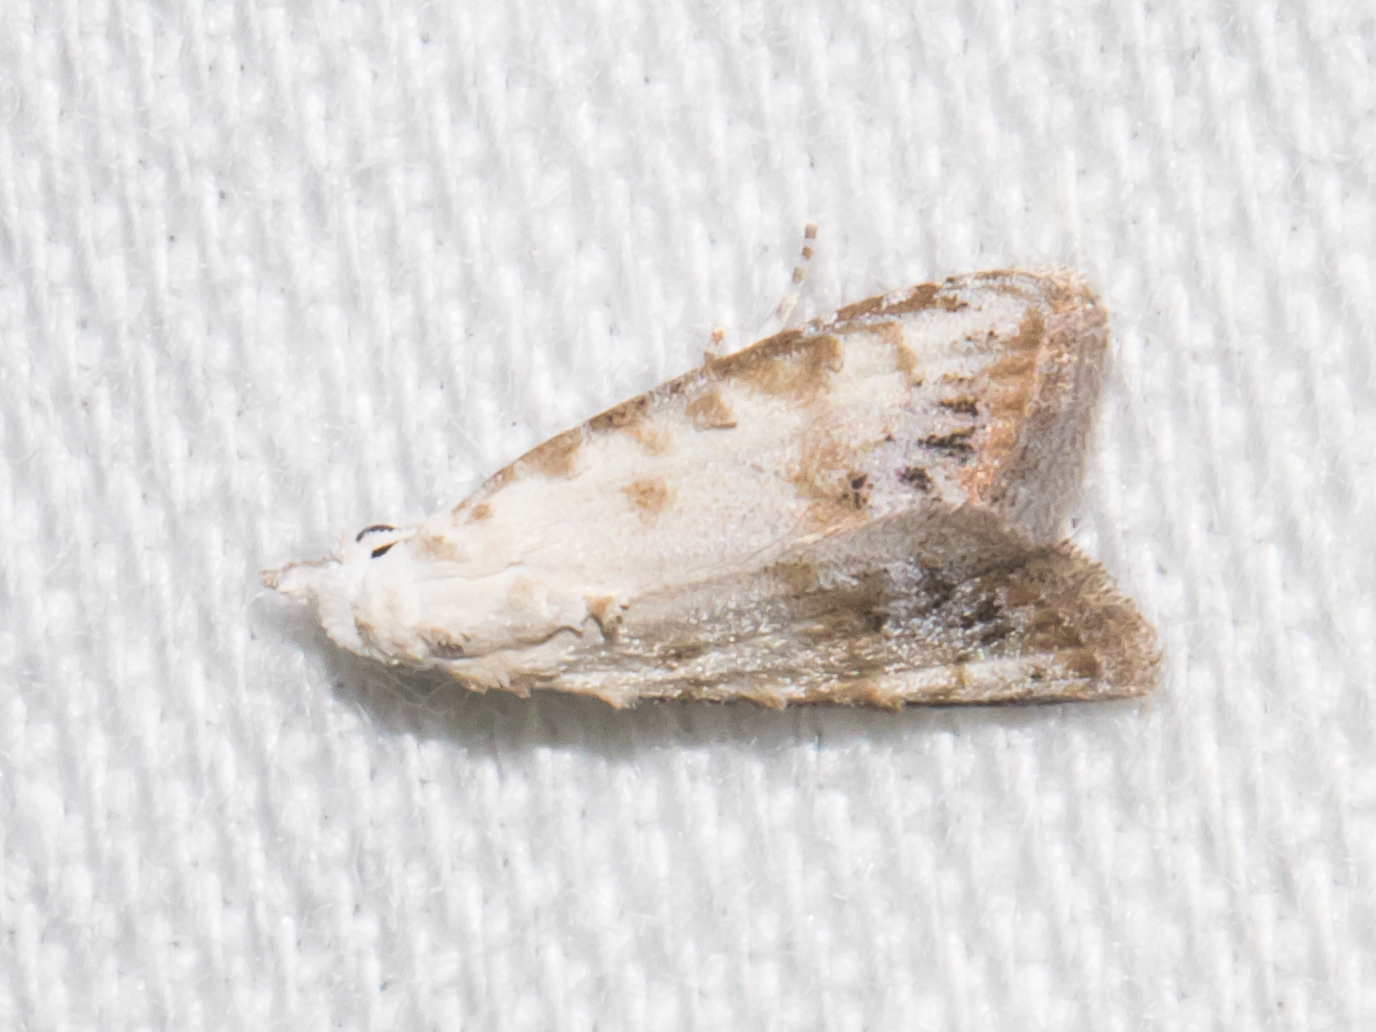 Maryland Biodiversity Project - Sorghum Webworm Moth (Nola cereella)